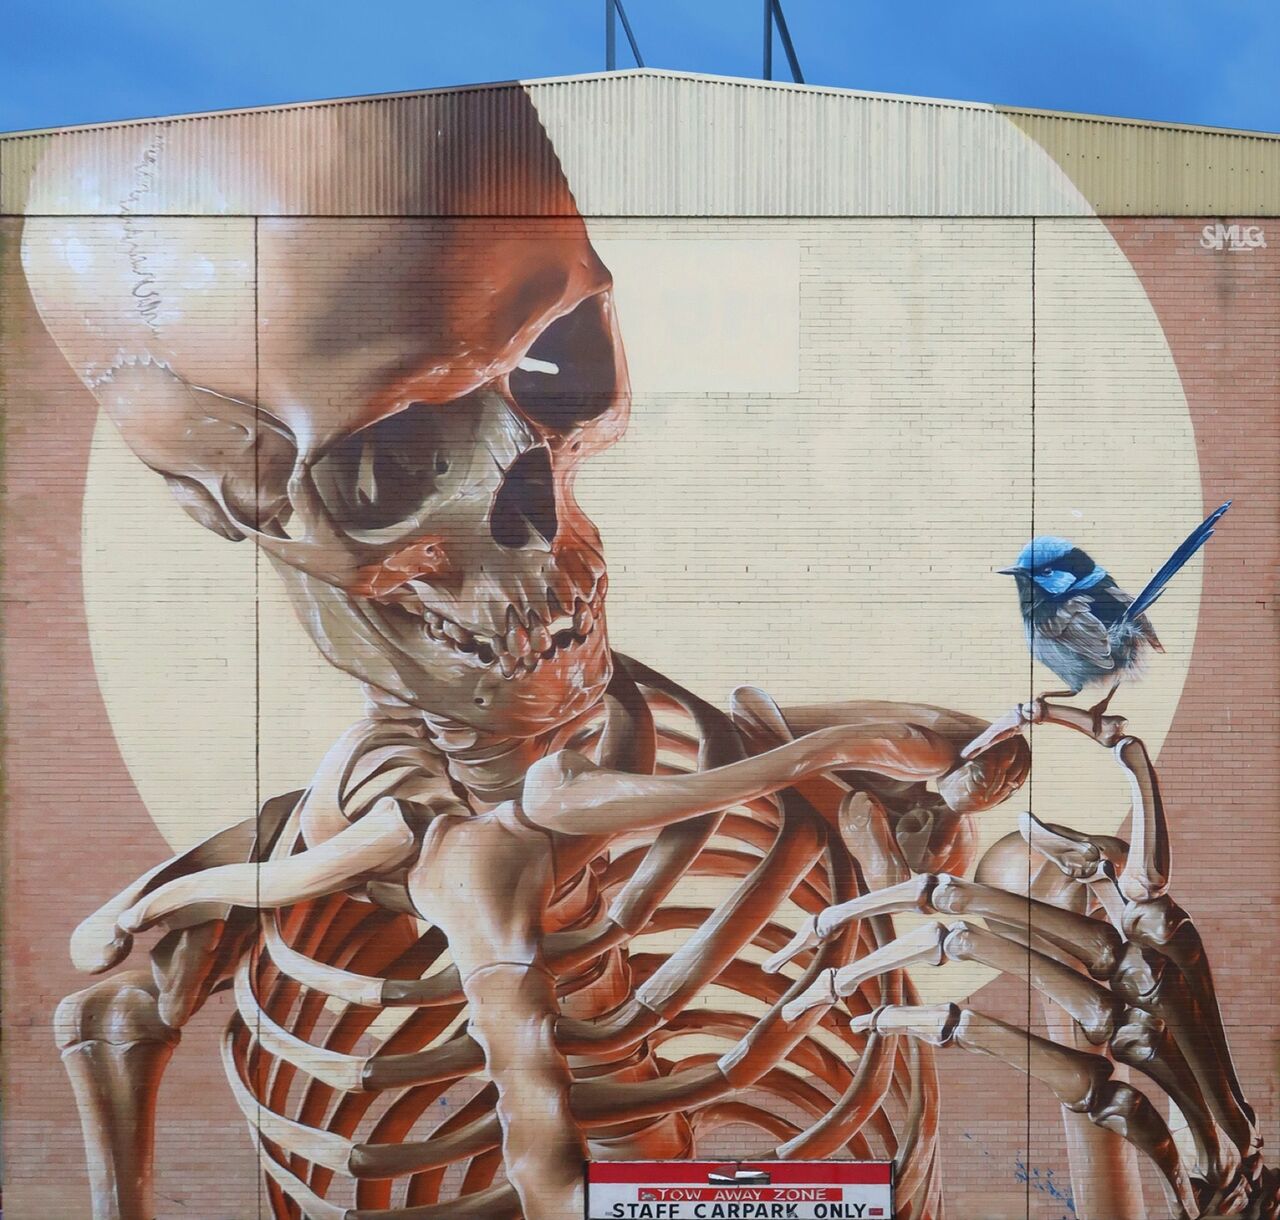 Smug for The Big Picture Fest in Frankston, Australia #streetart #mural #graffiti #art https://t.co/WTrW99GJvT